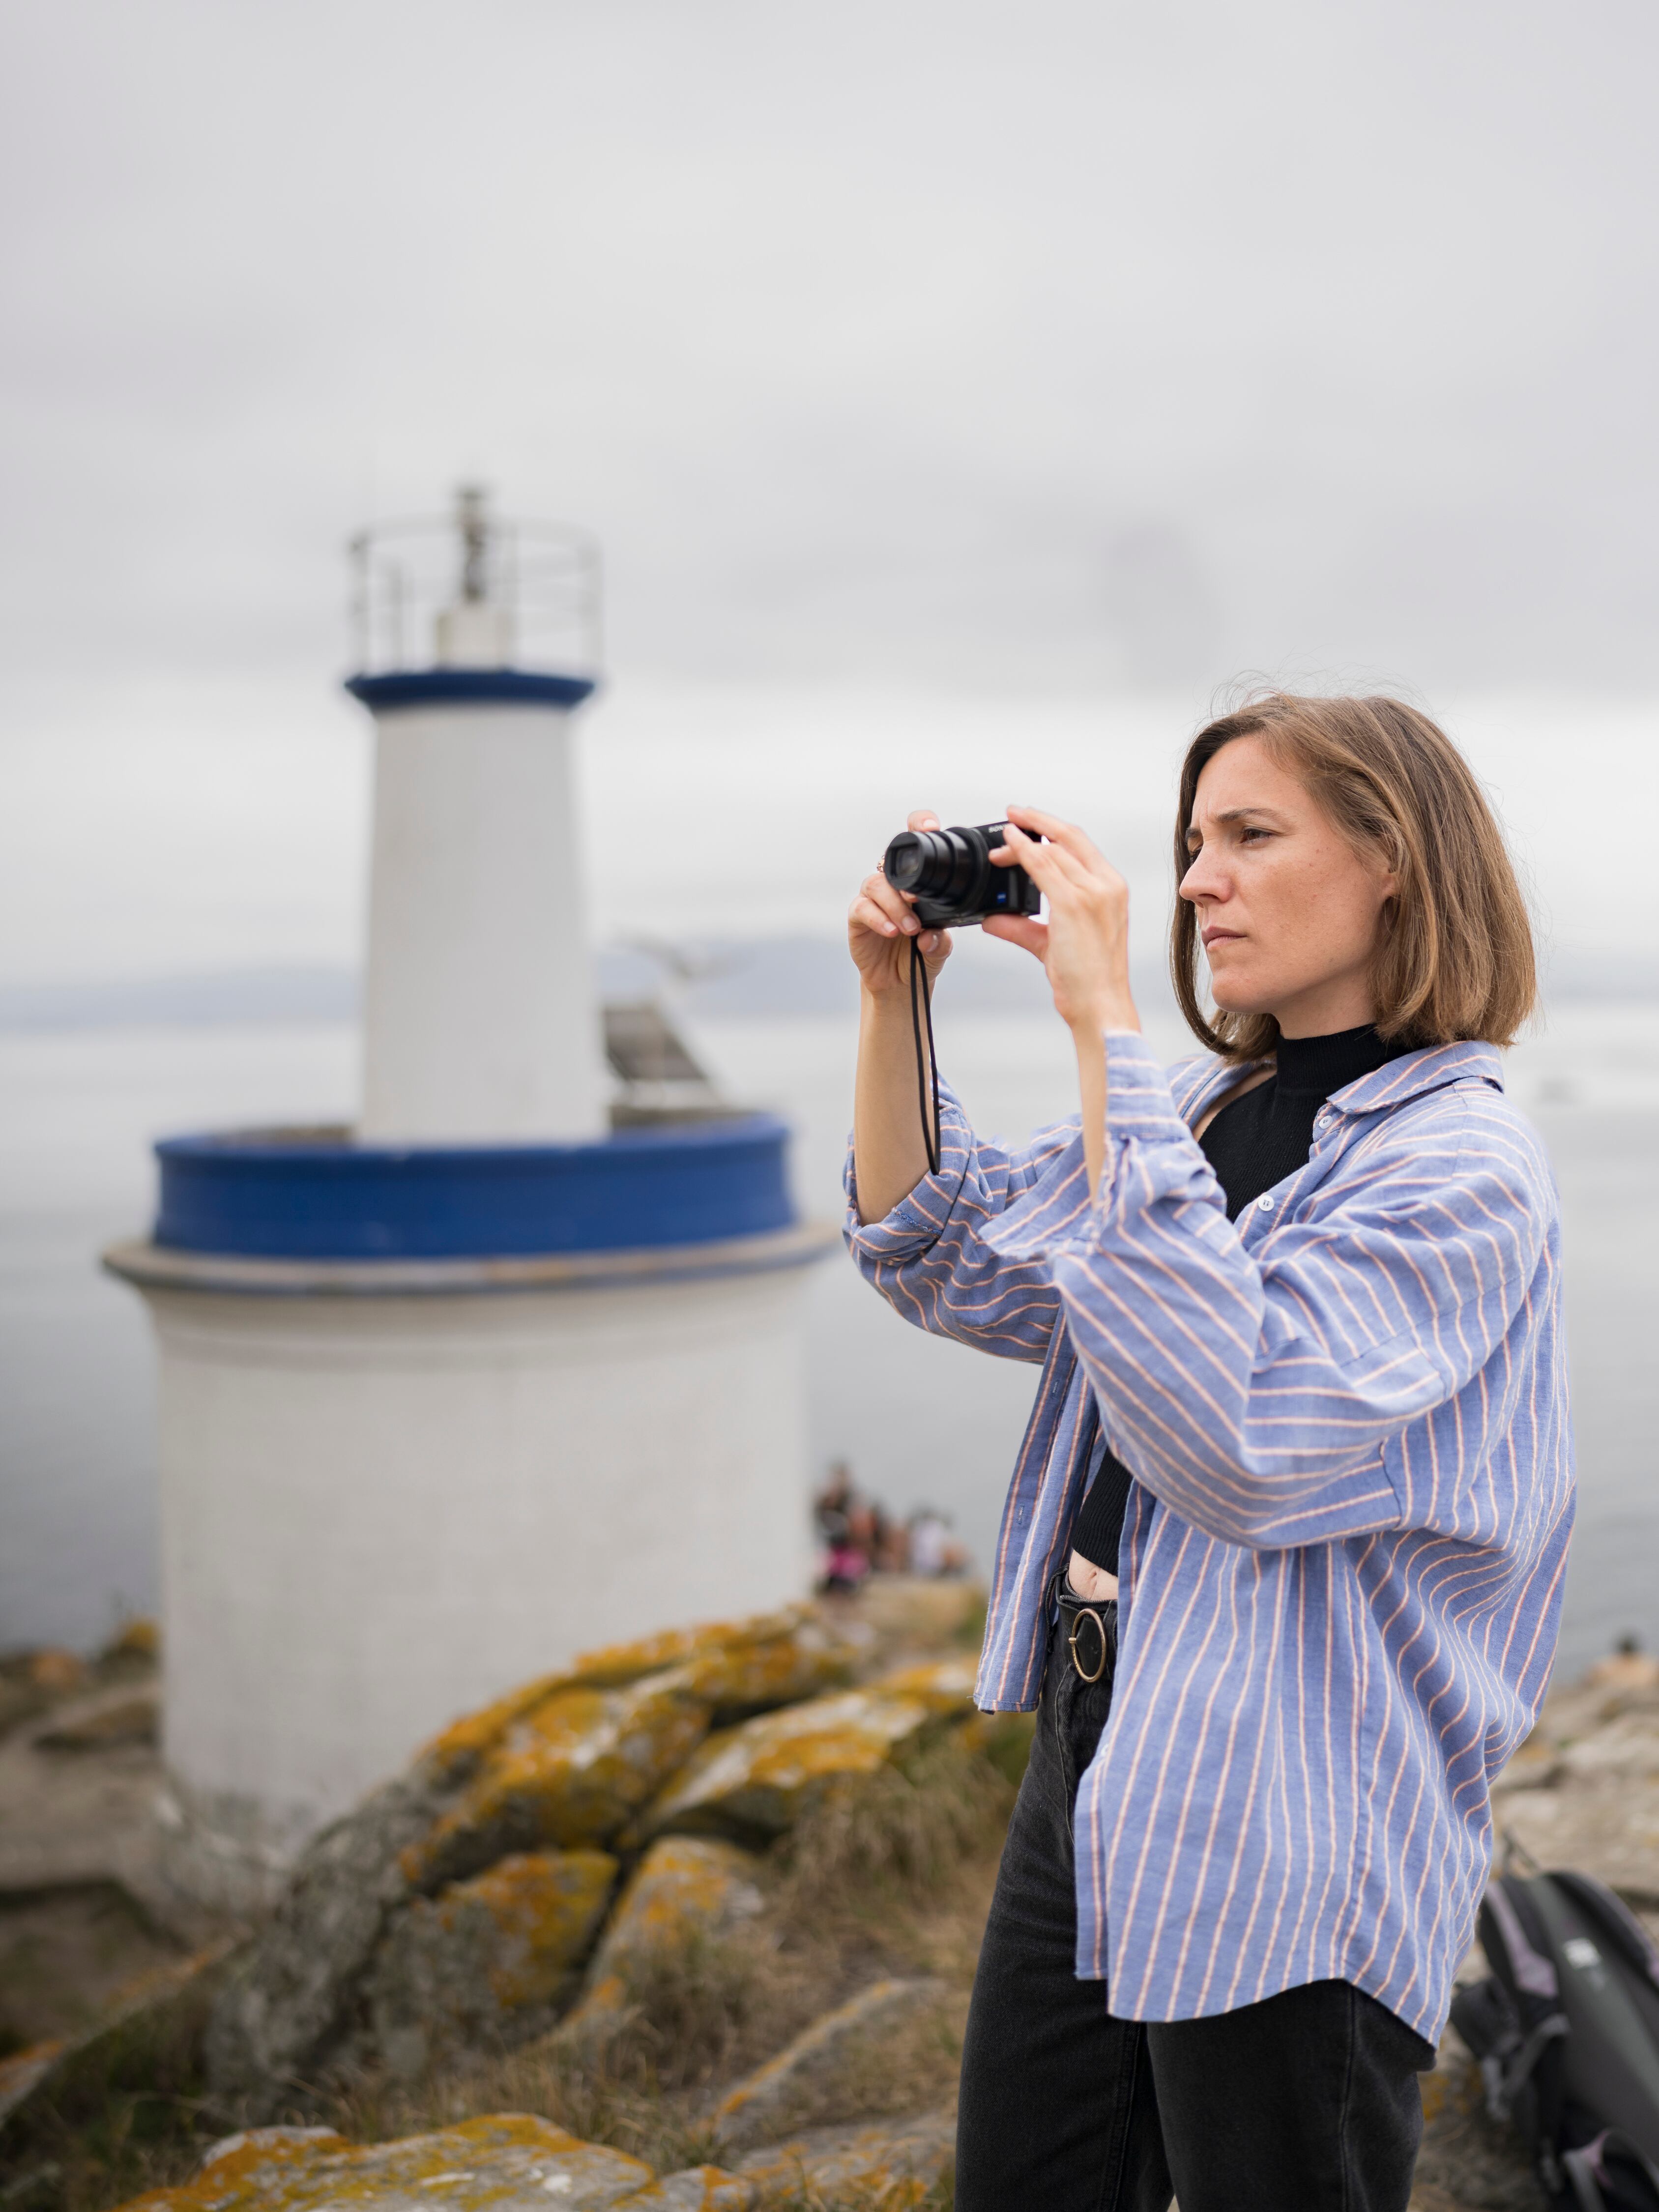 Carla Simón toma una fotografía junto al faro de Porta, en la isla de Faro, en las islas Cíes. “No soy explícita porque la vida lo es poco”.